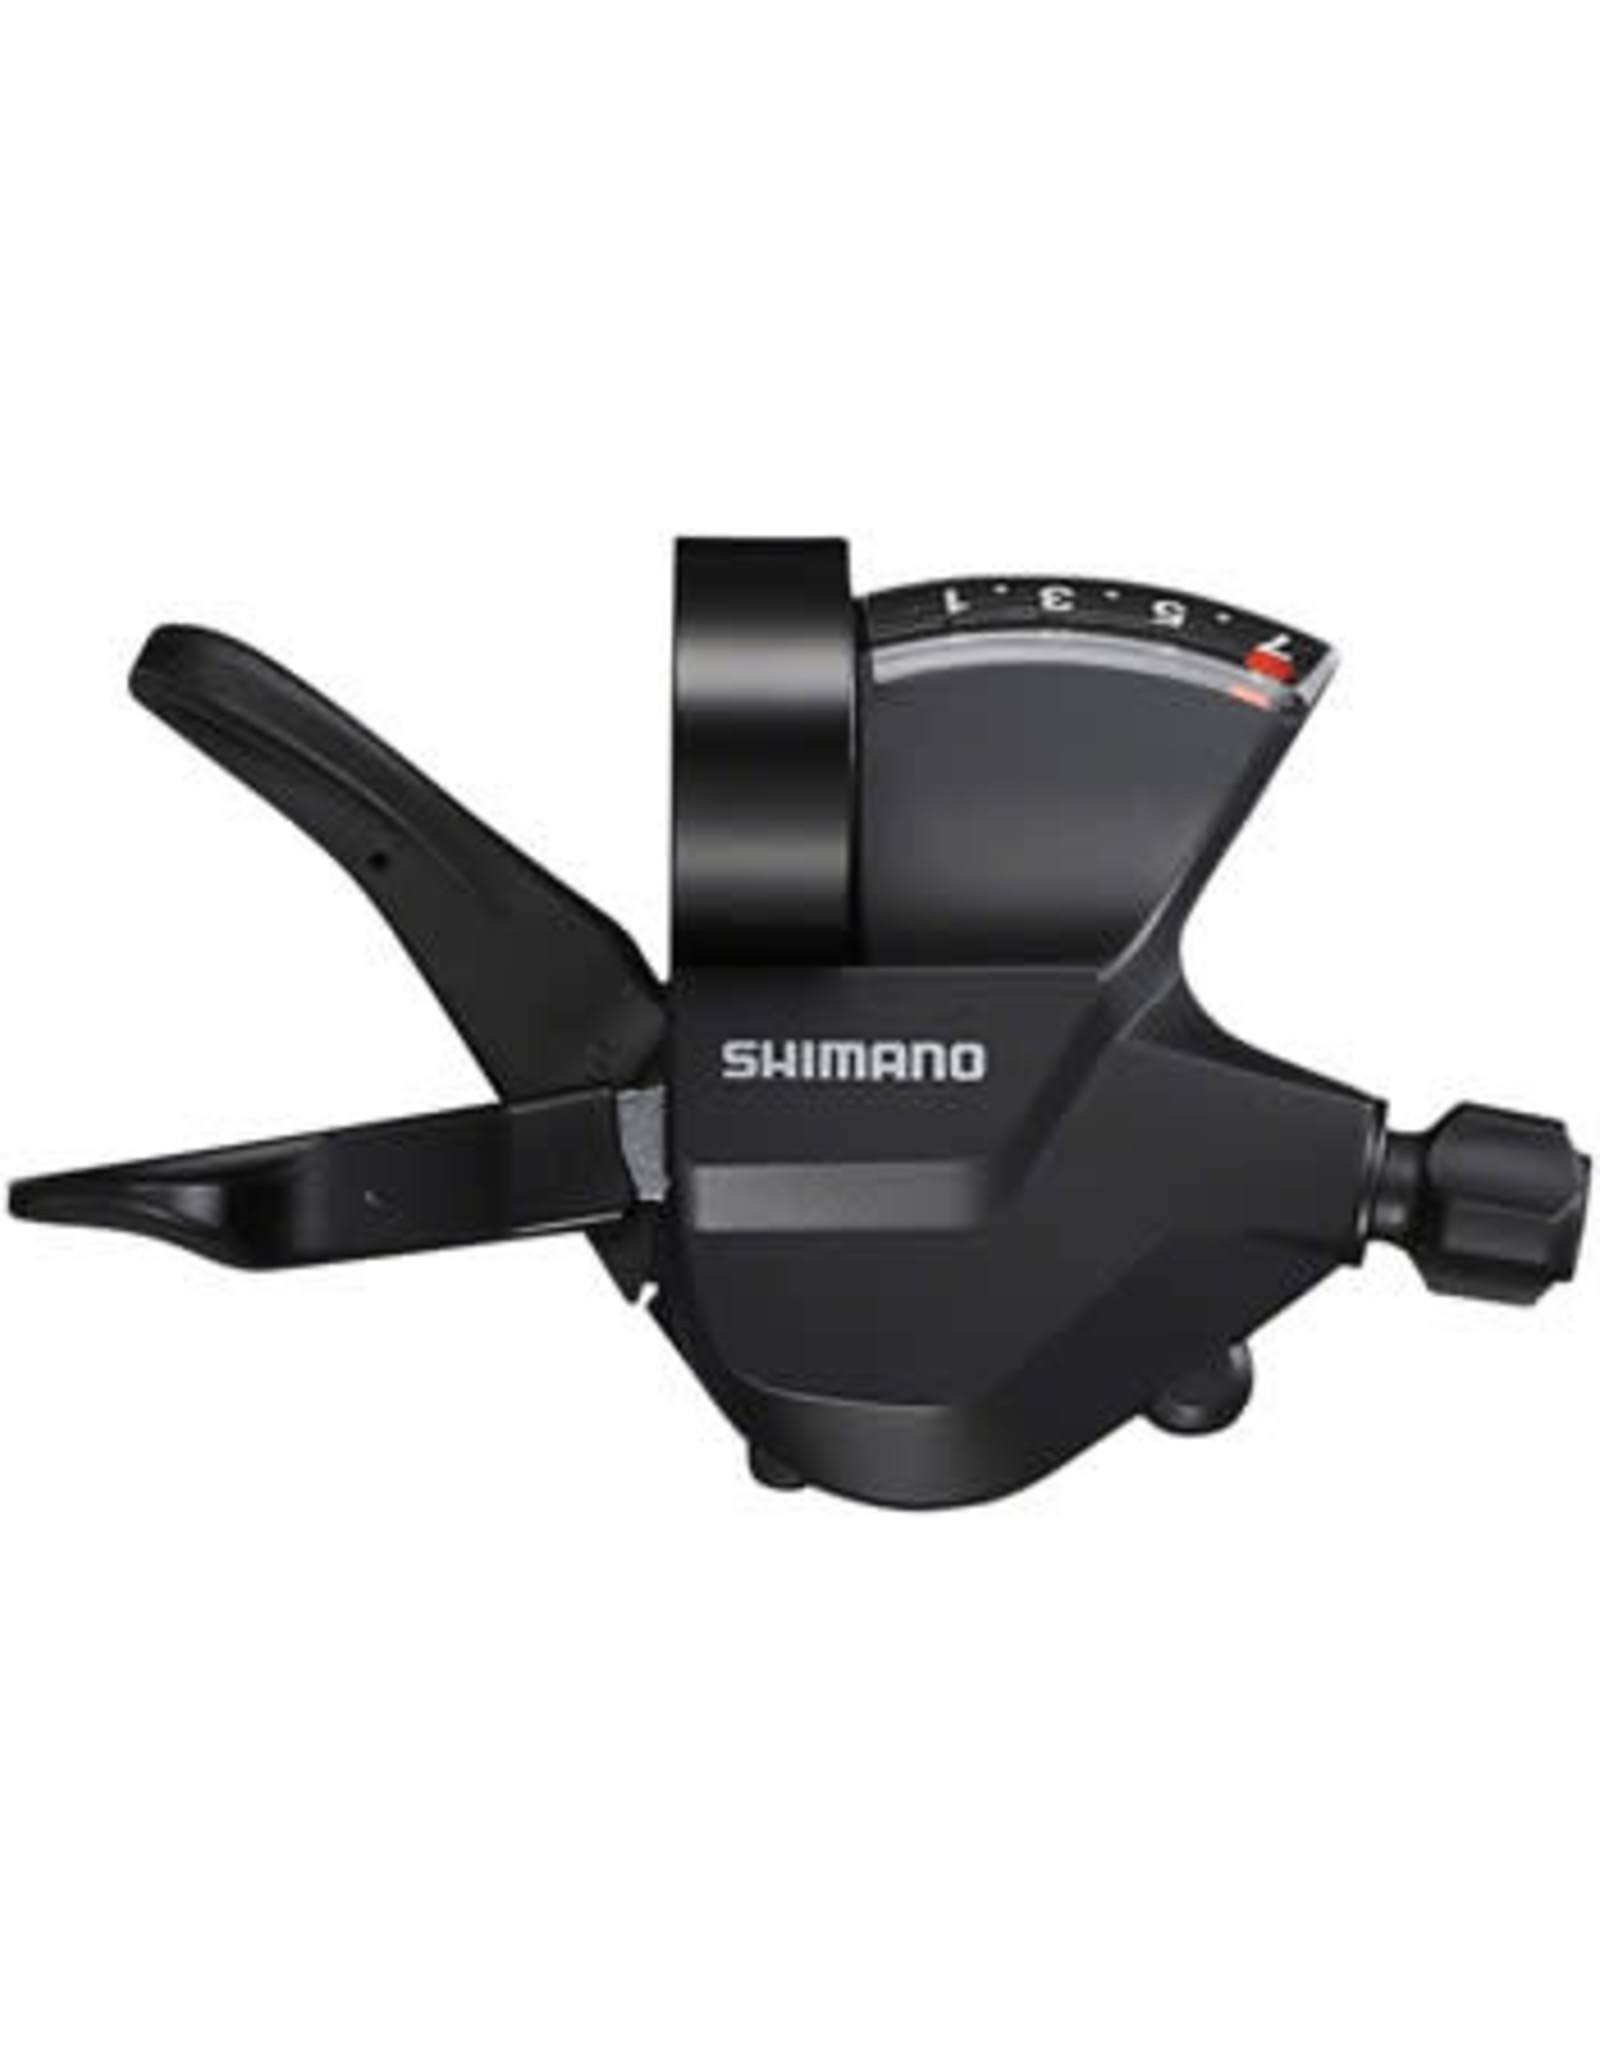 Shimano Sl-M315-7R Trigger Shifter 7 Speed